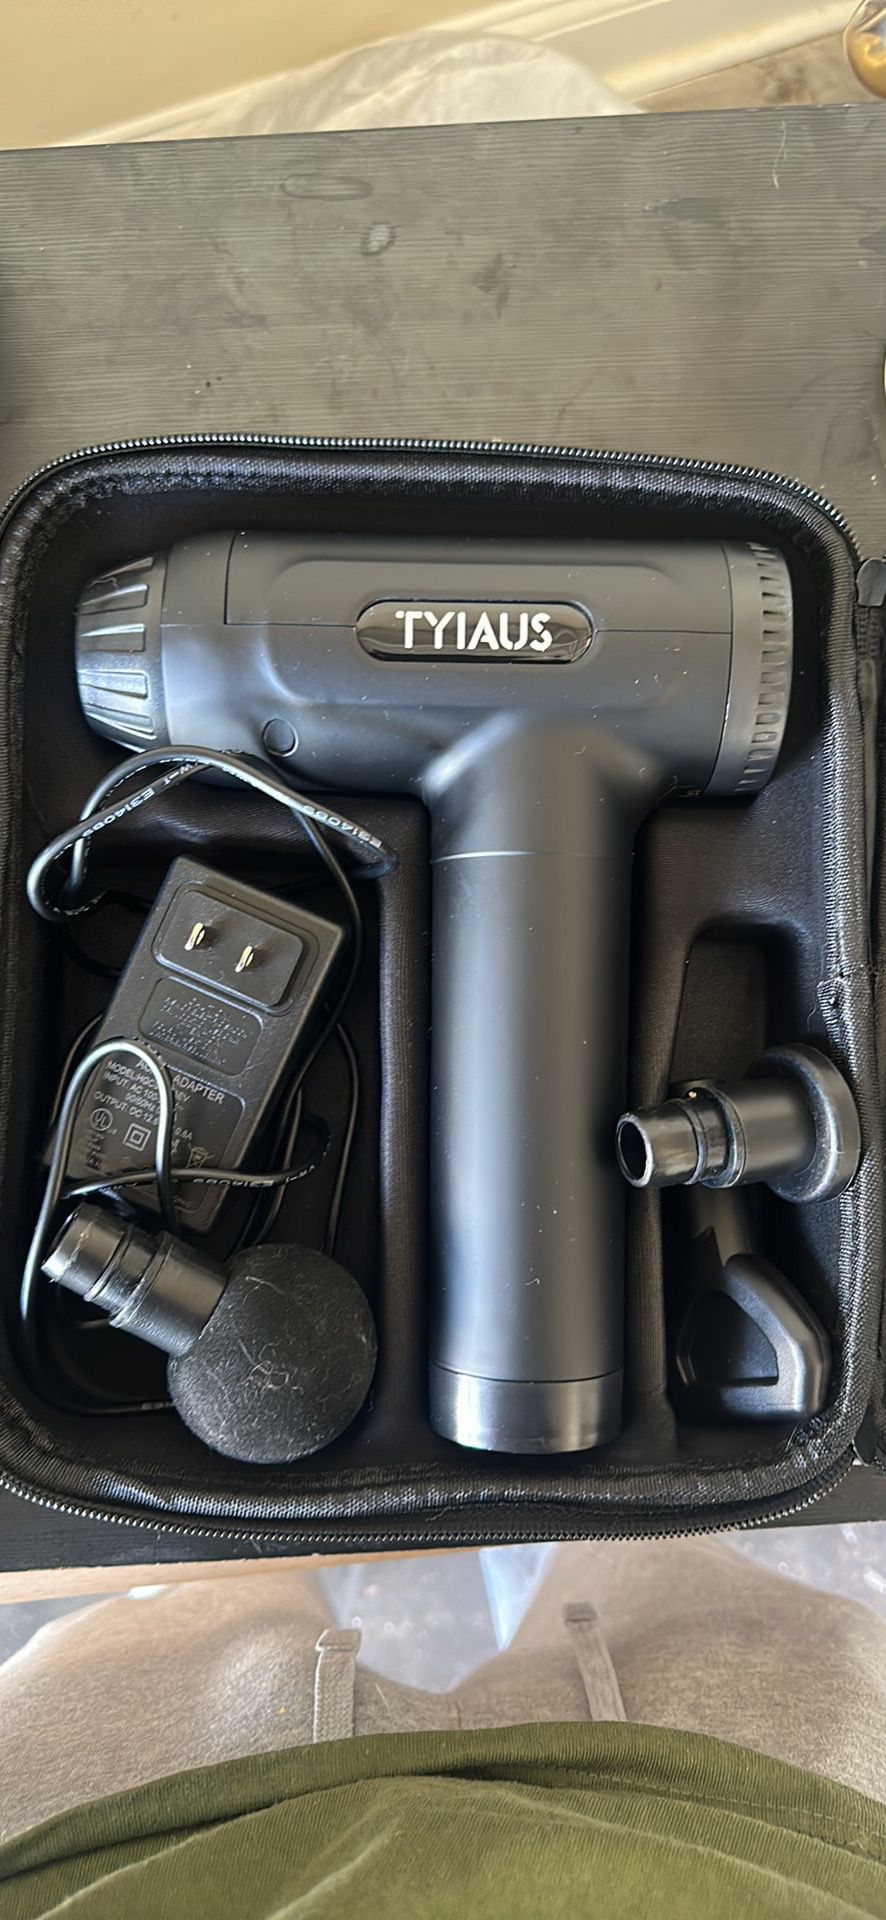 TYIAUS Massage Gun